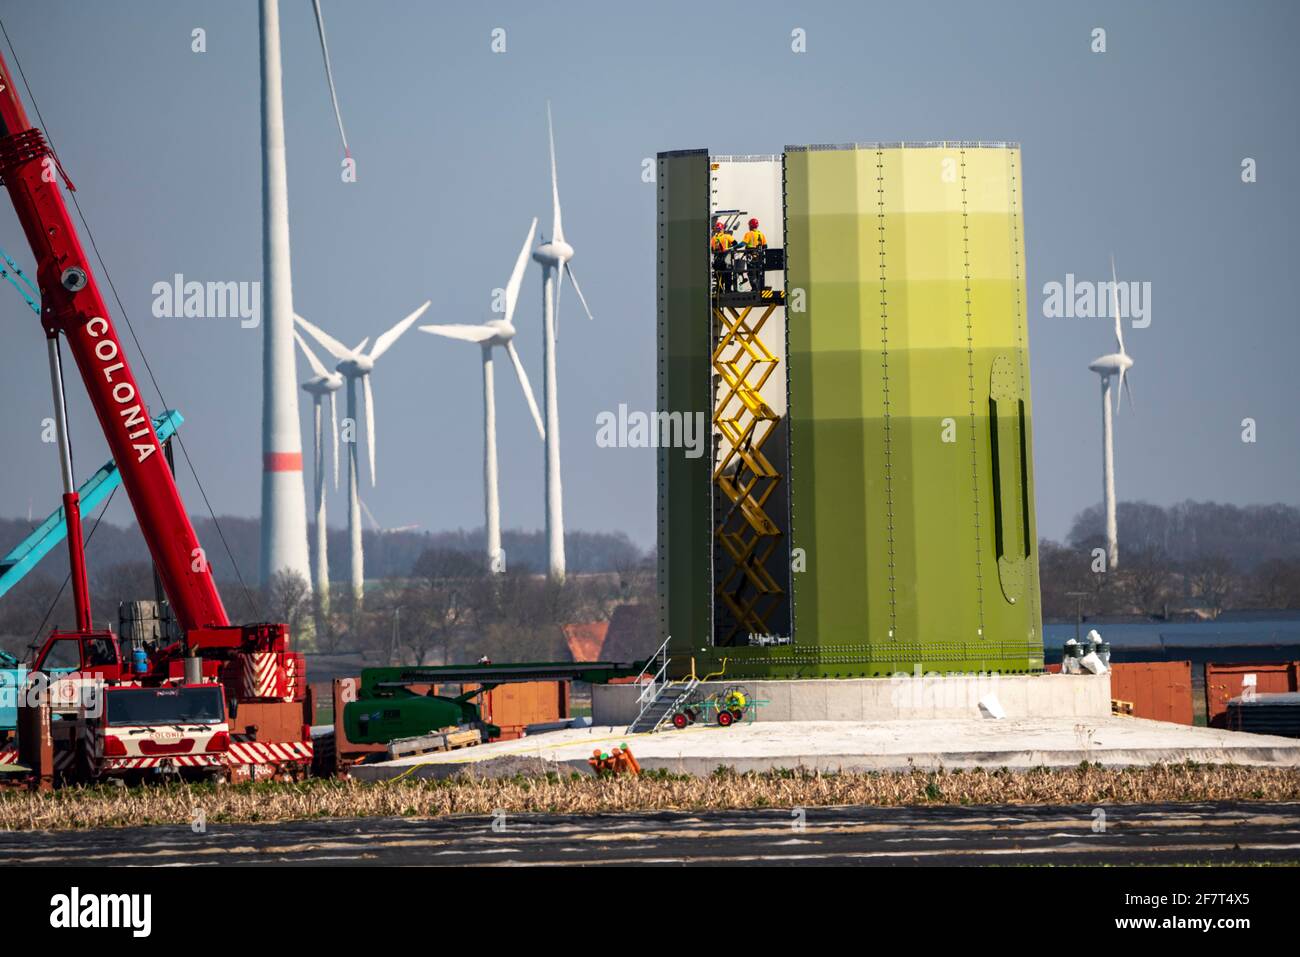 Bau einer Windkraftanlage, Stahlsäule von Enercon, bei Kerken, Kreis Kleve, am Niederrhein, NRW, Deutschland, Stockfoto